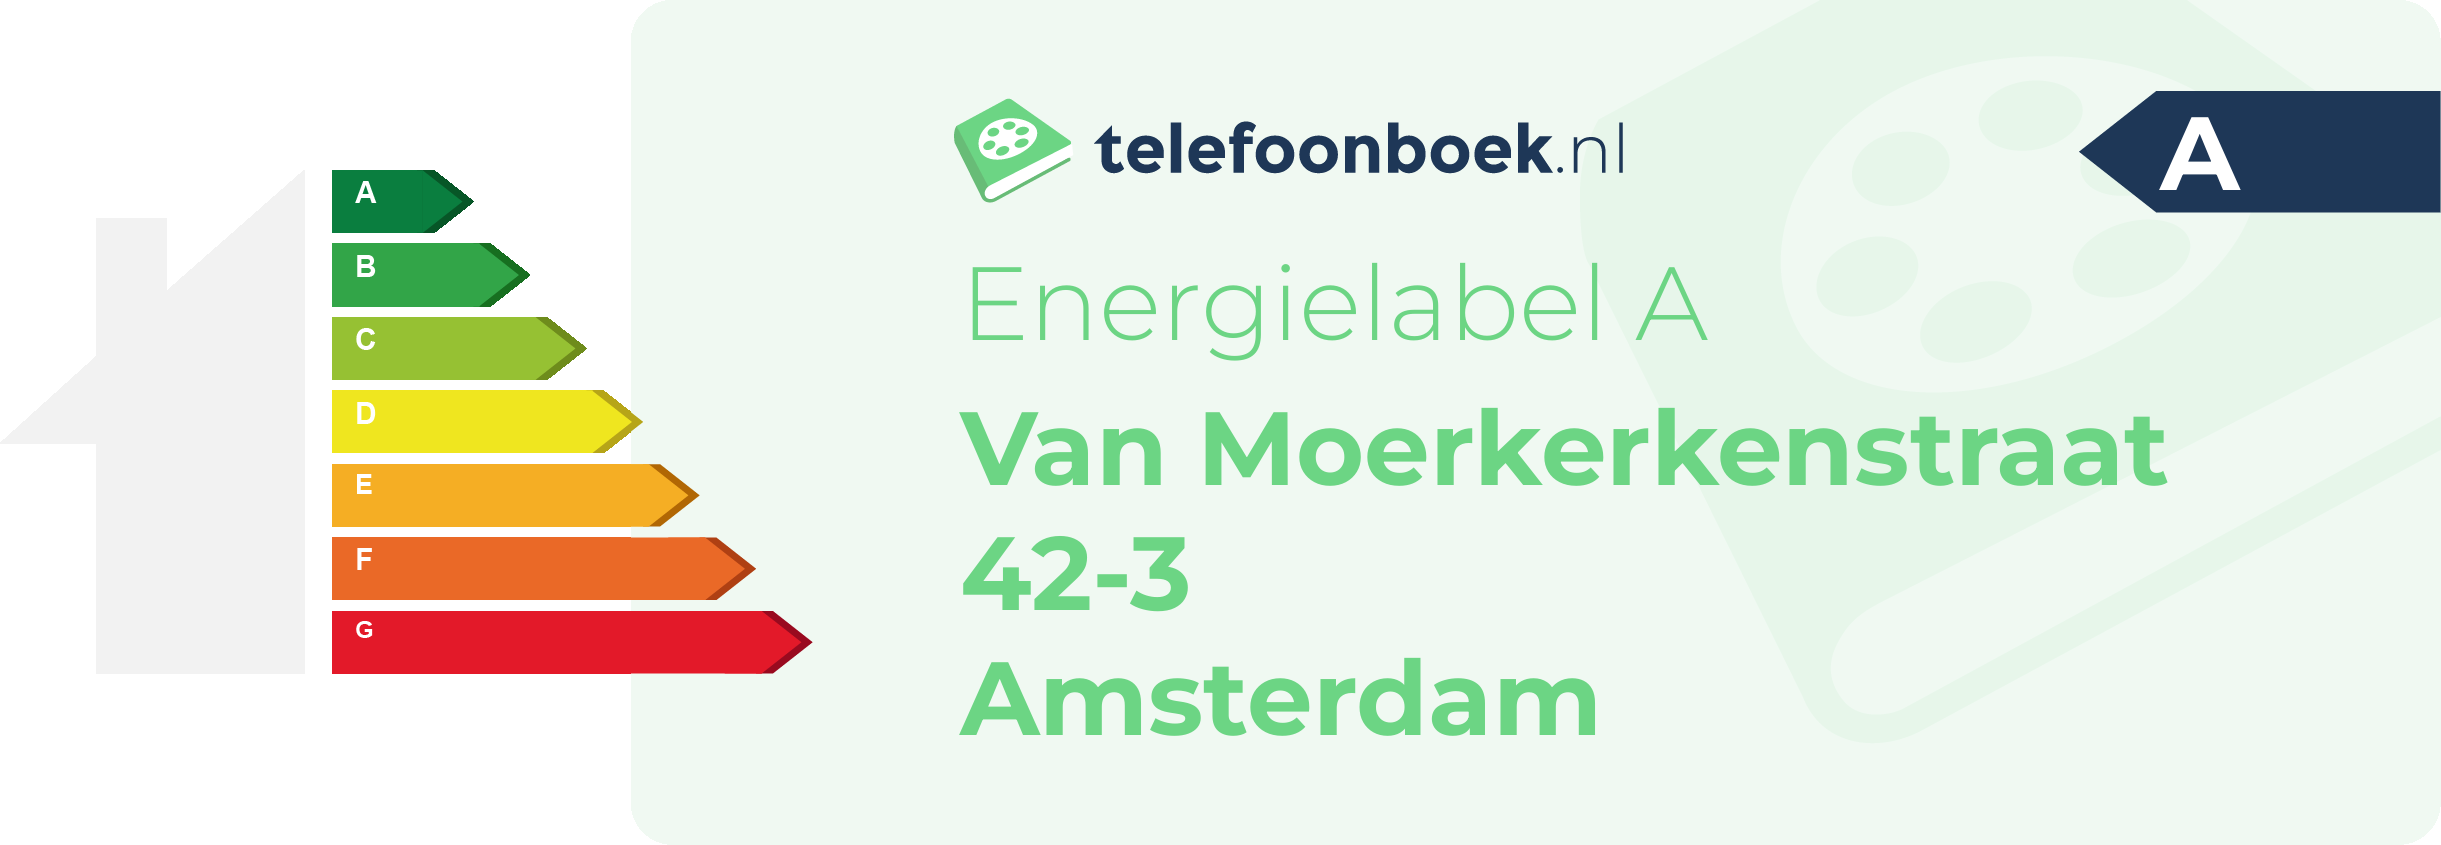 Energielabel Van Moerkerkenstraat 42-3 Amsterdam